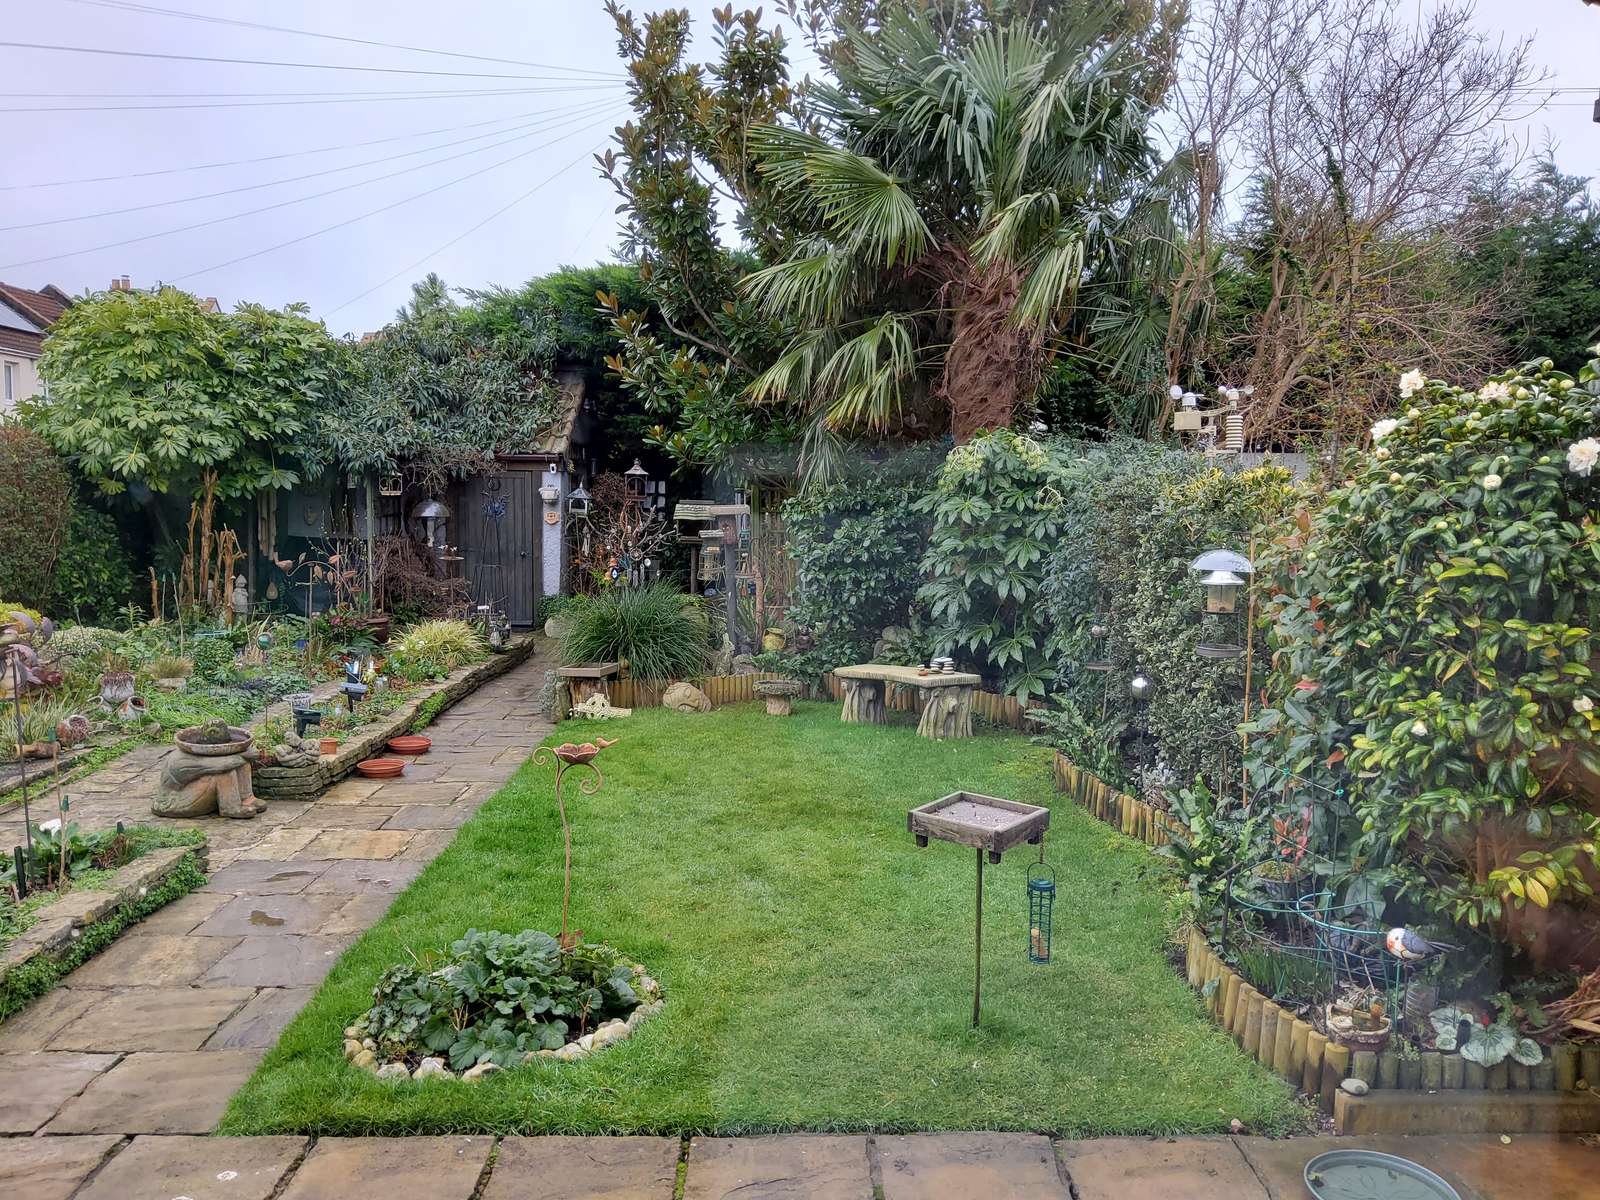 Ogród w Bristolu w Wielkiej Brytanii puzzle online